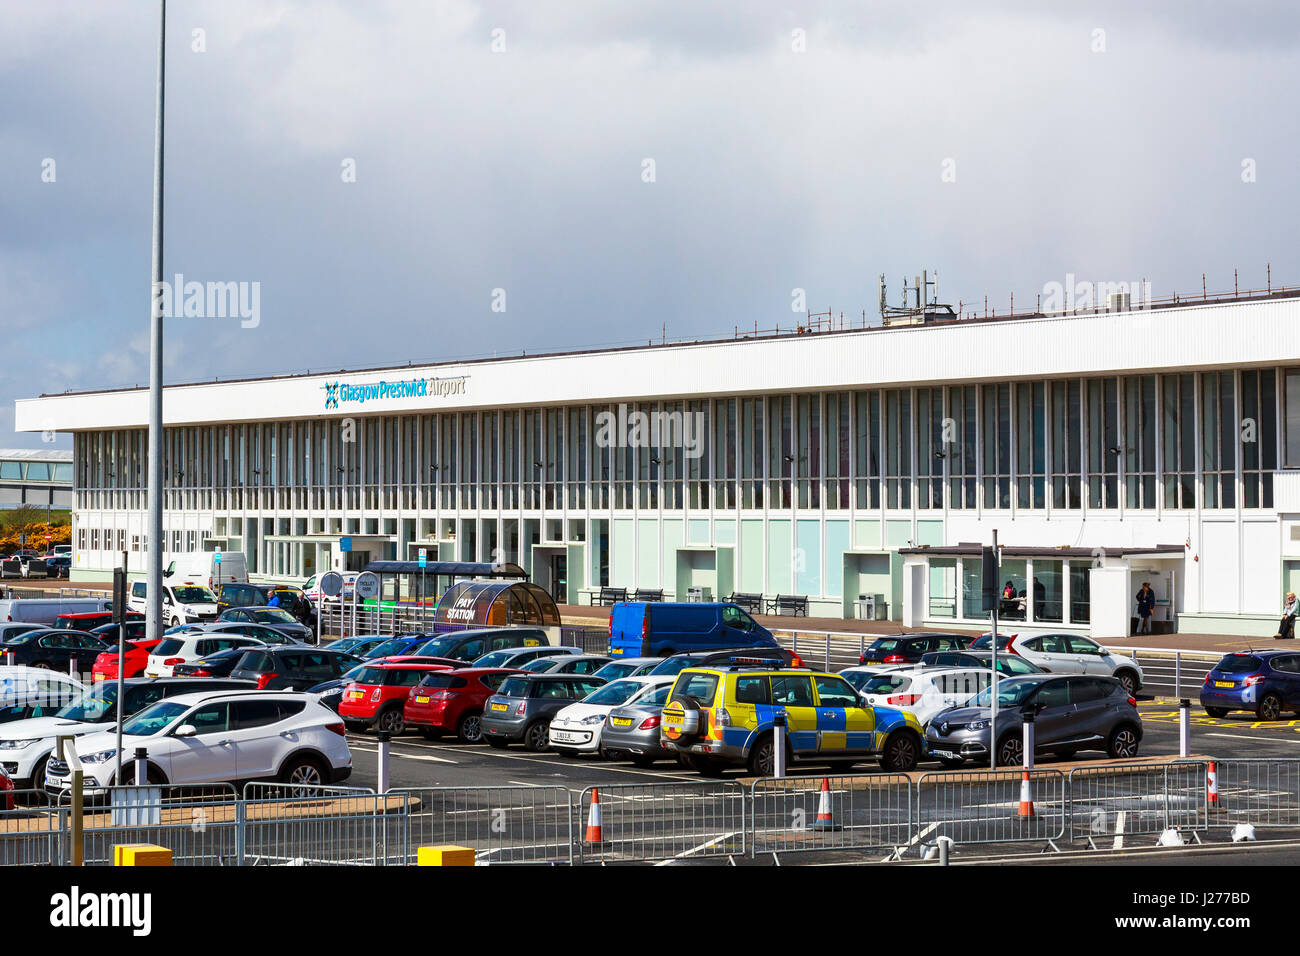 Glasgow Prestwick Airport, Prestwick, Ayrshire, Scotland, UK Stock Photo